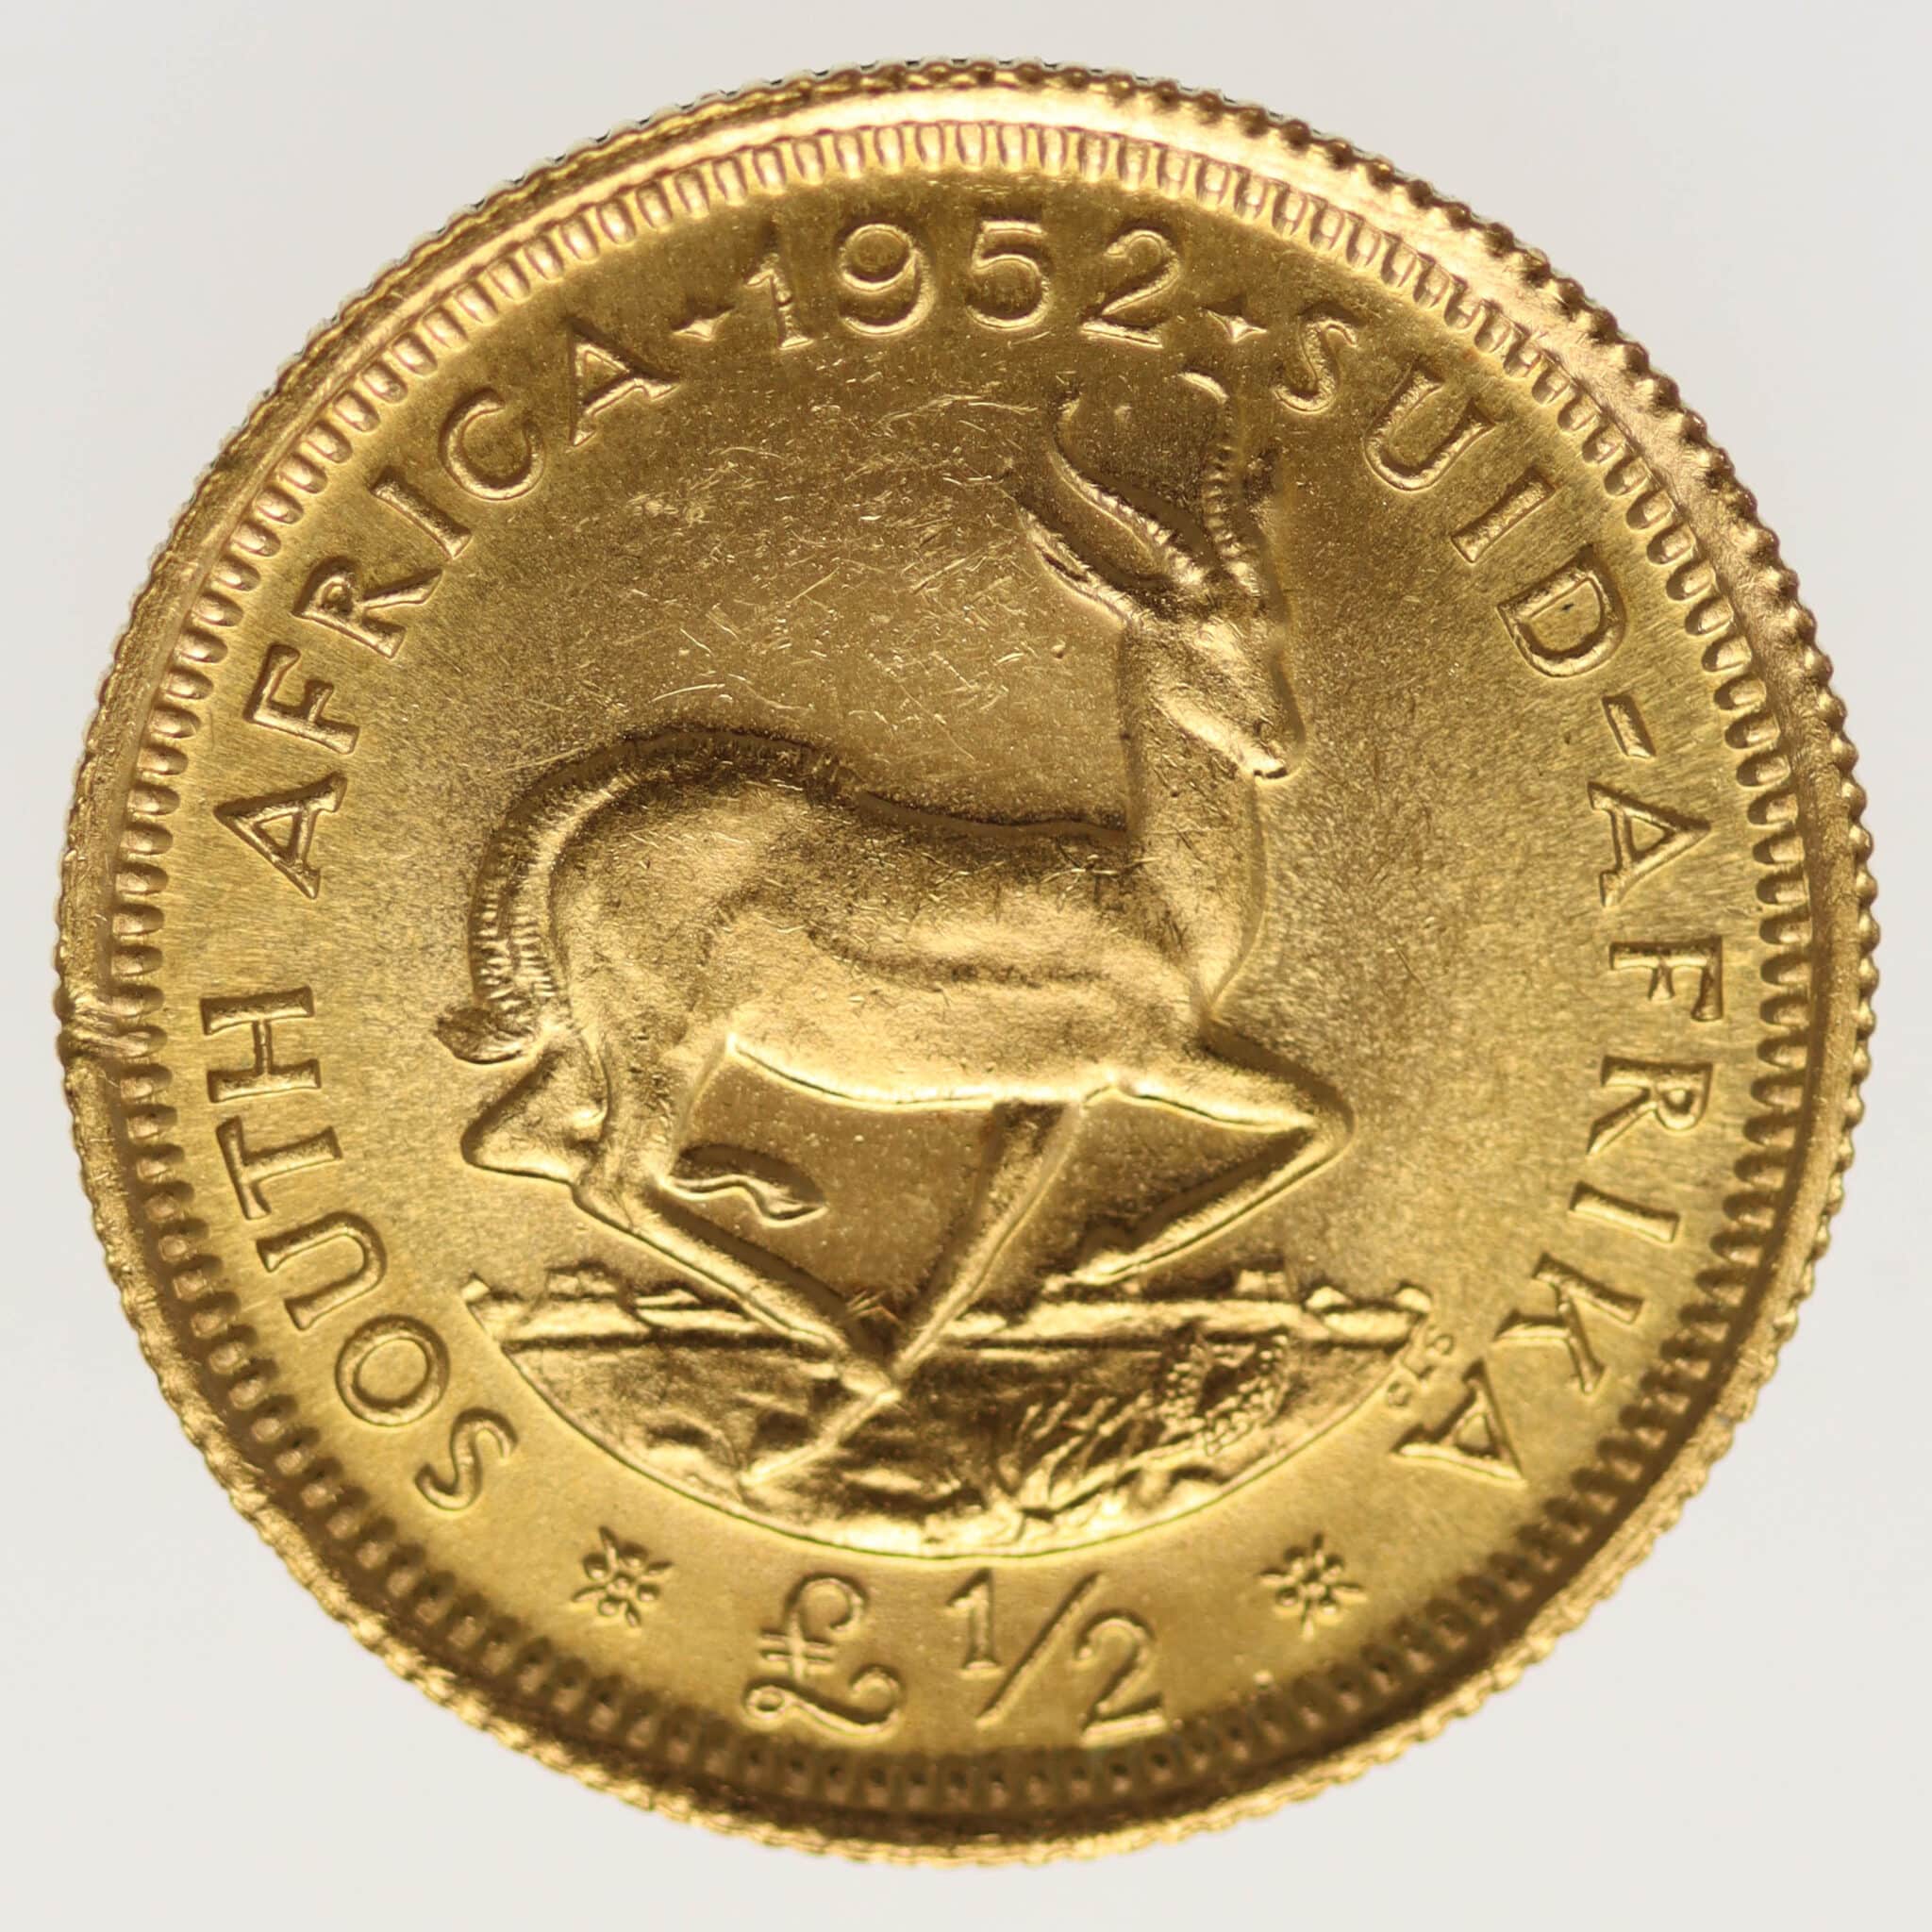 suedafrika - Südafrika Georg VI. Half Pound 1952